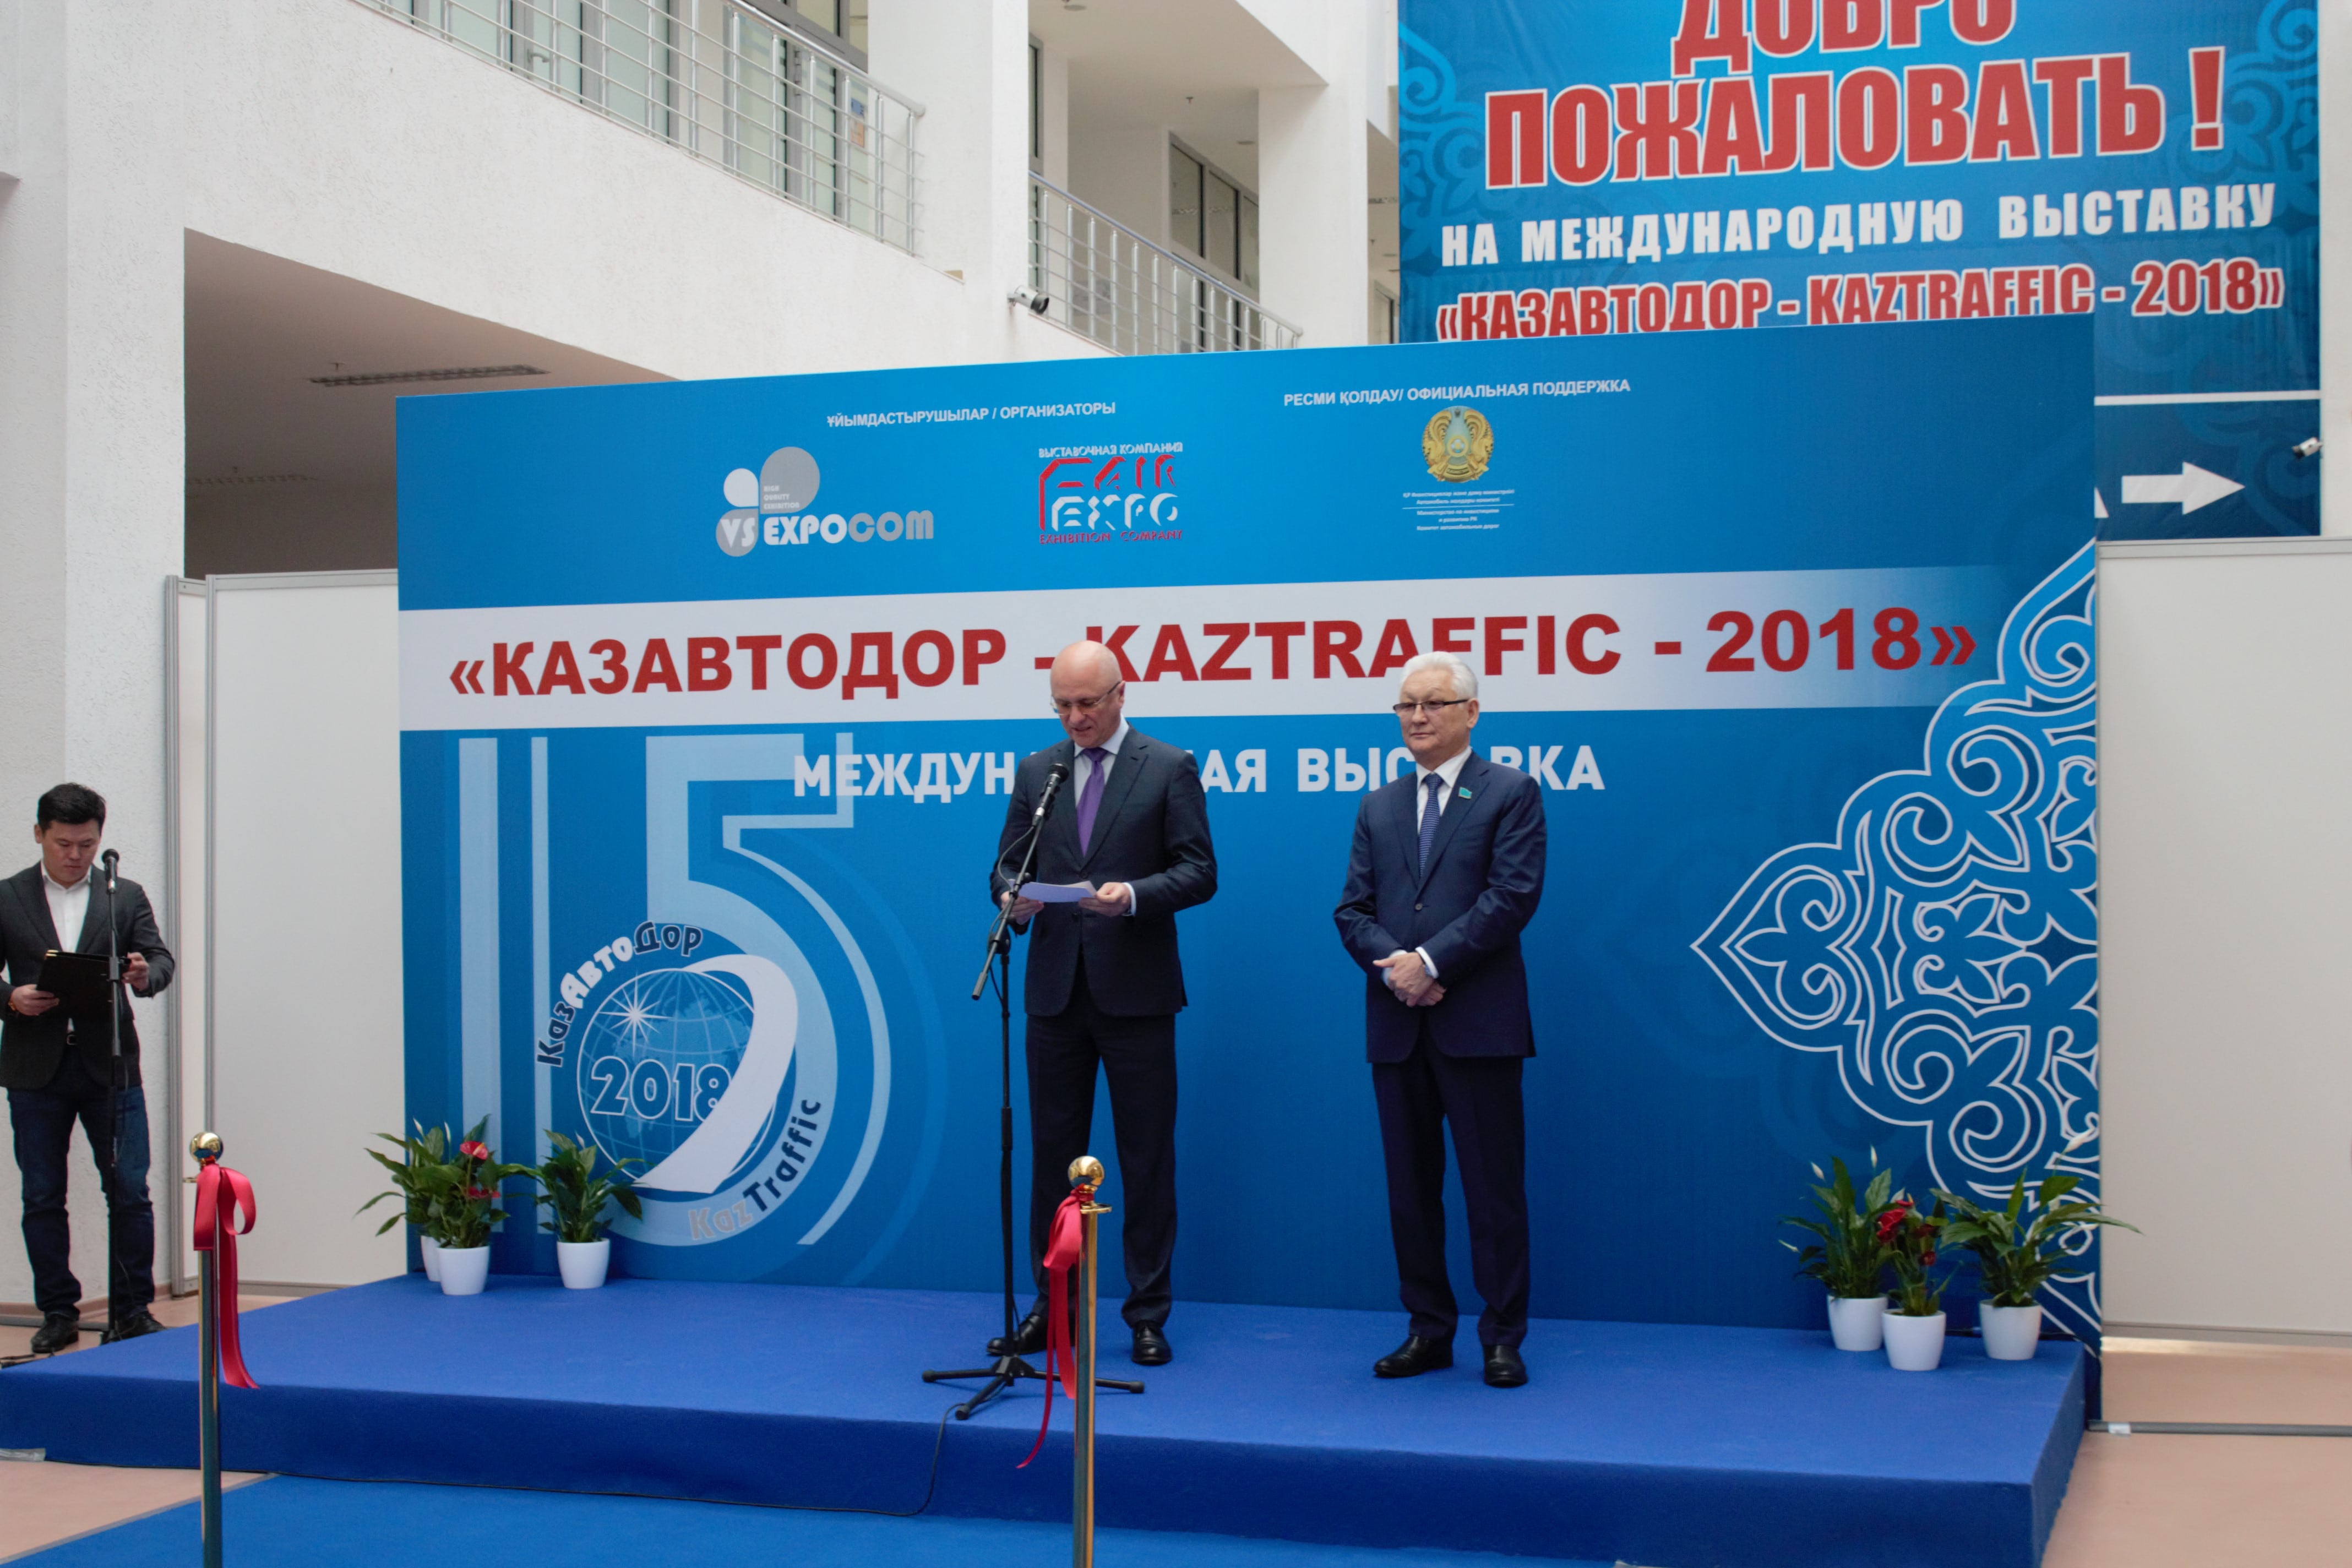 В Астане прошла Международная дорожно-строительная выставка "Казавтодор-Kaztraffic – 2018" 